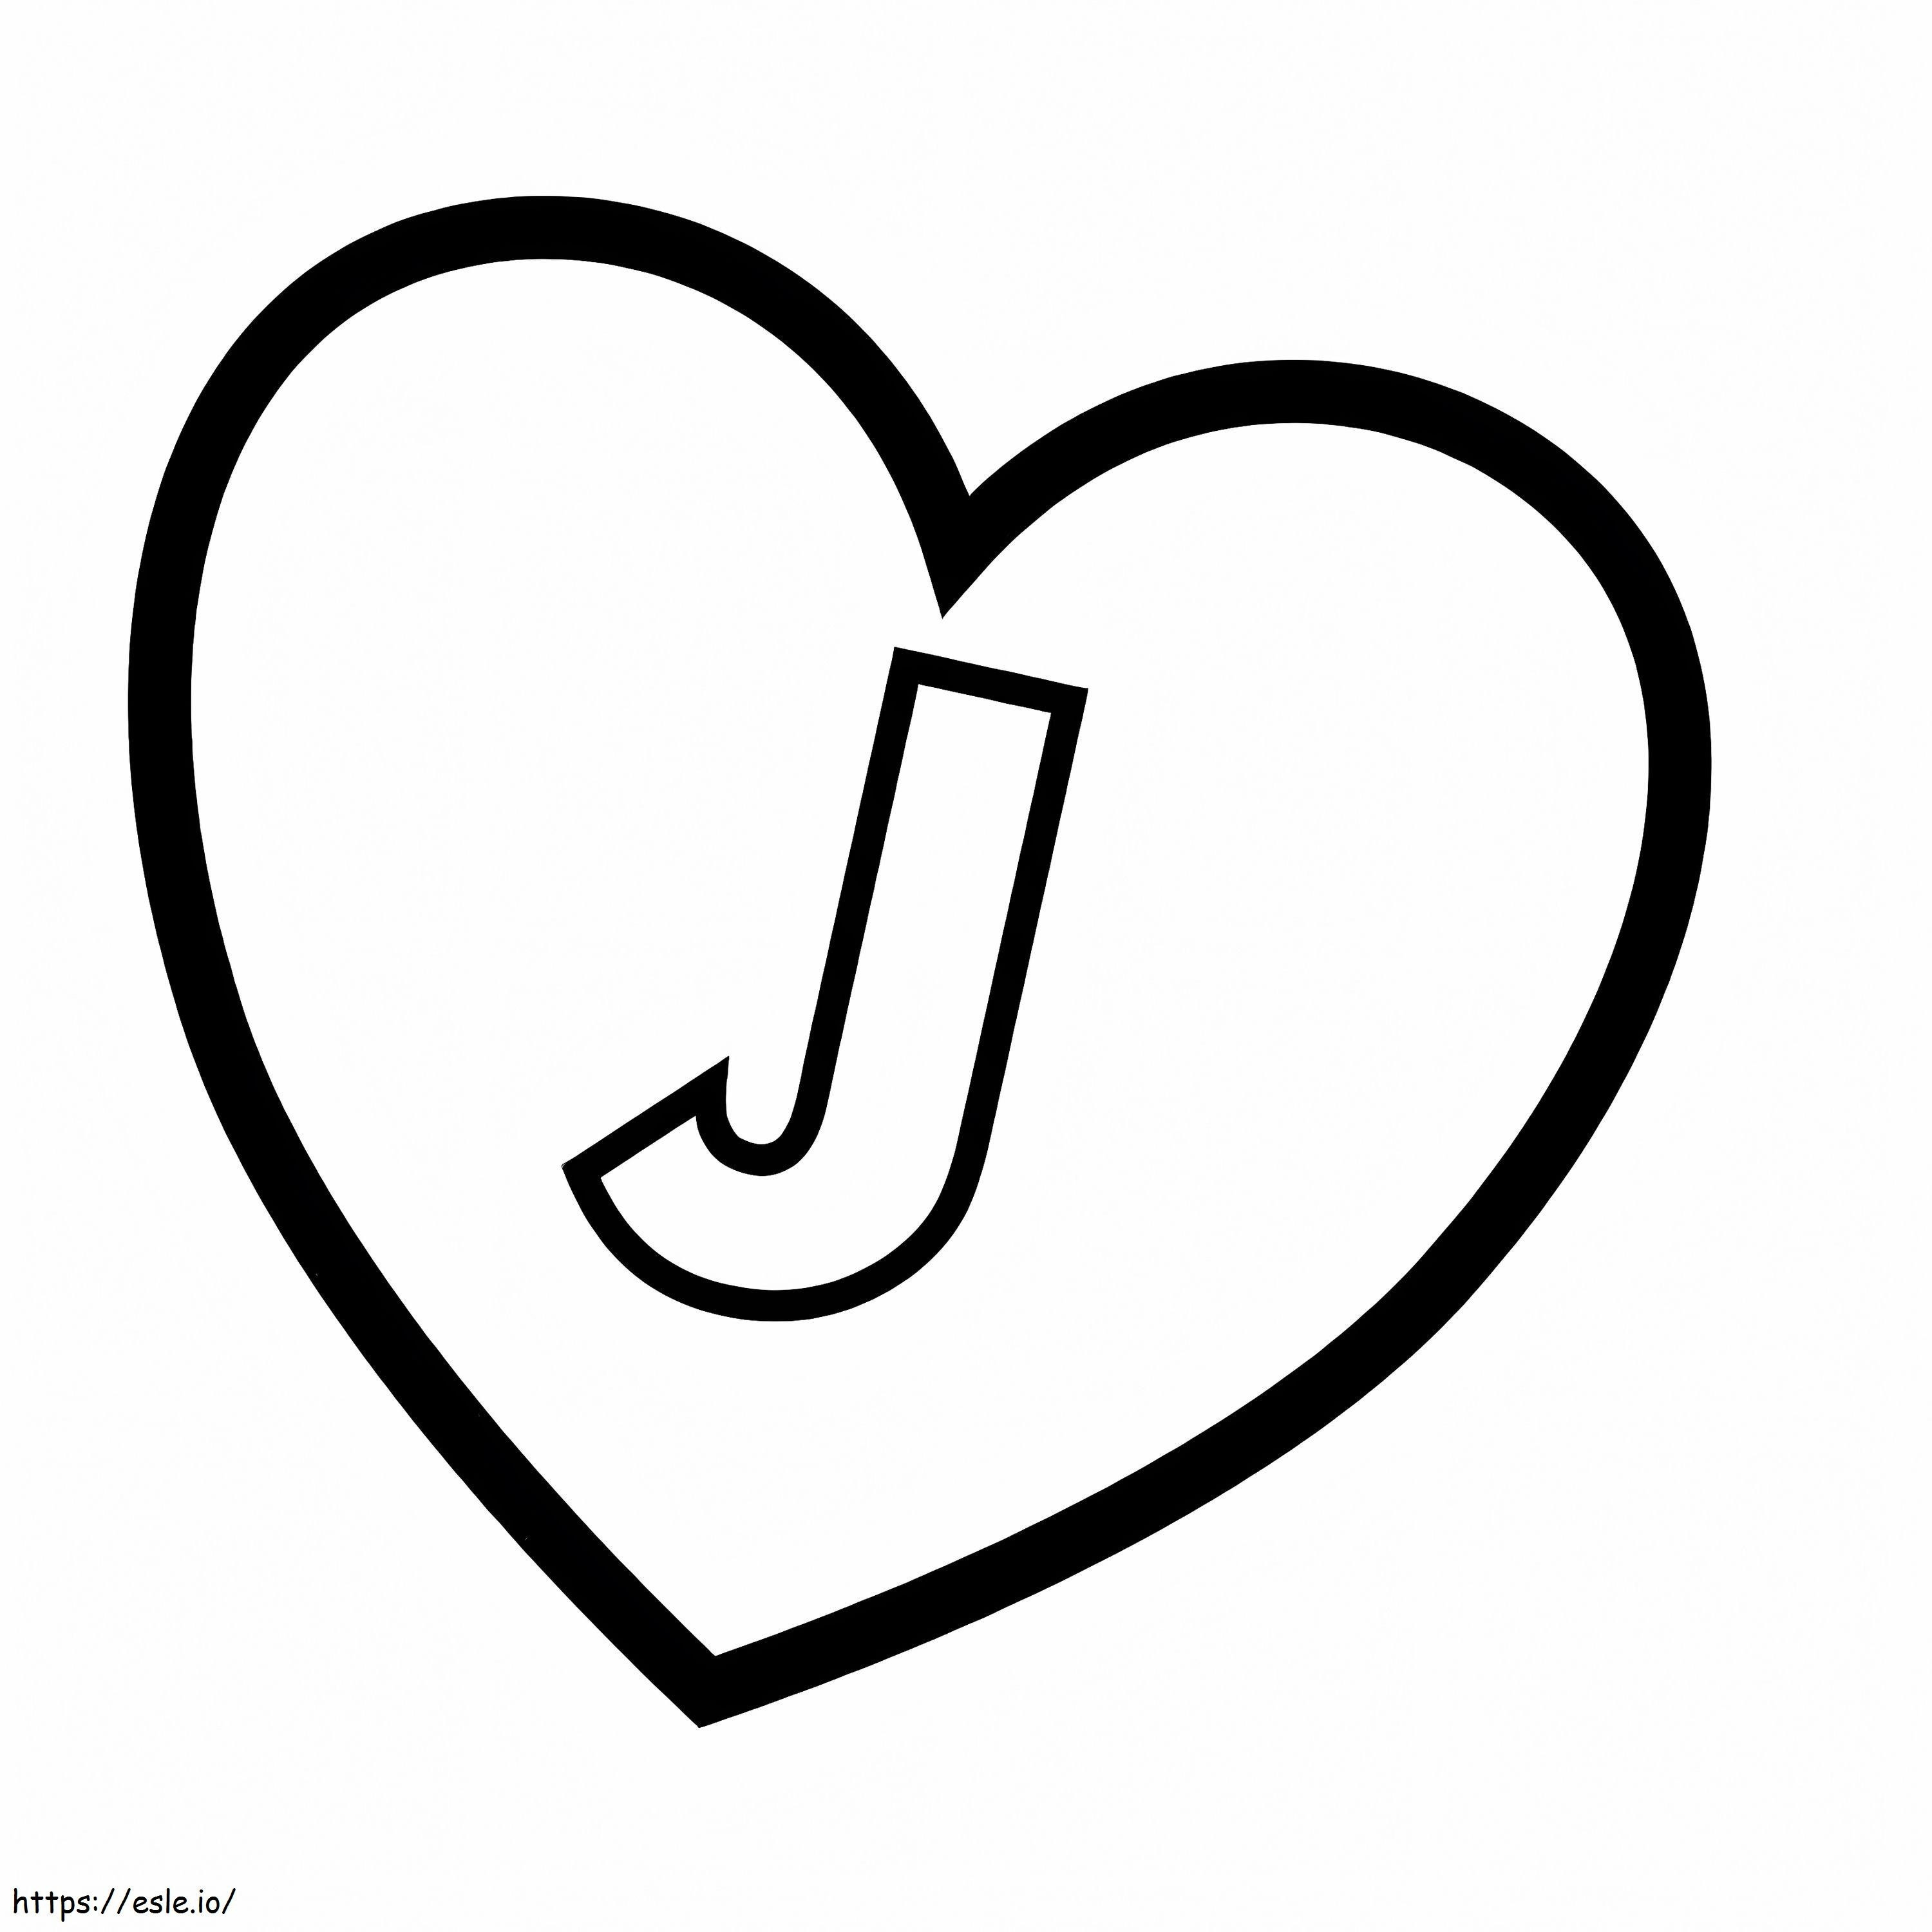 Lettera J nel cuore da colorare